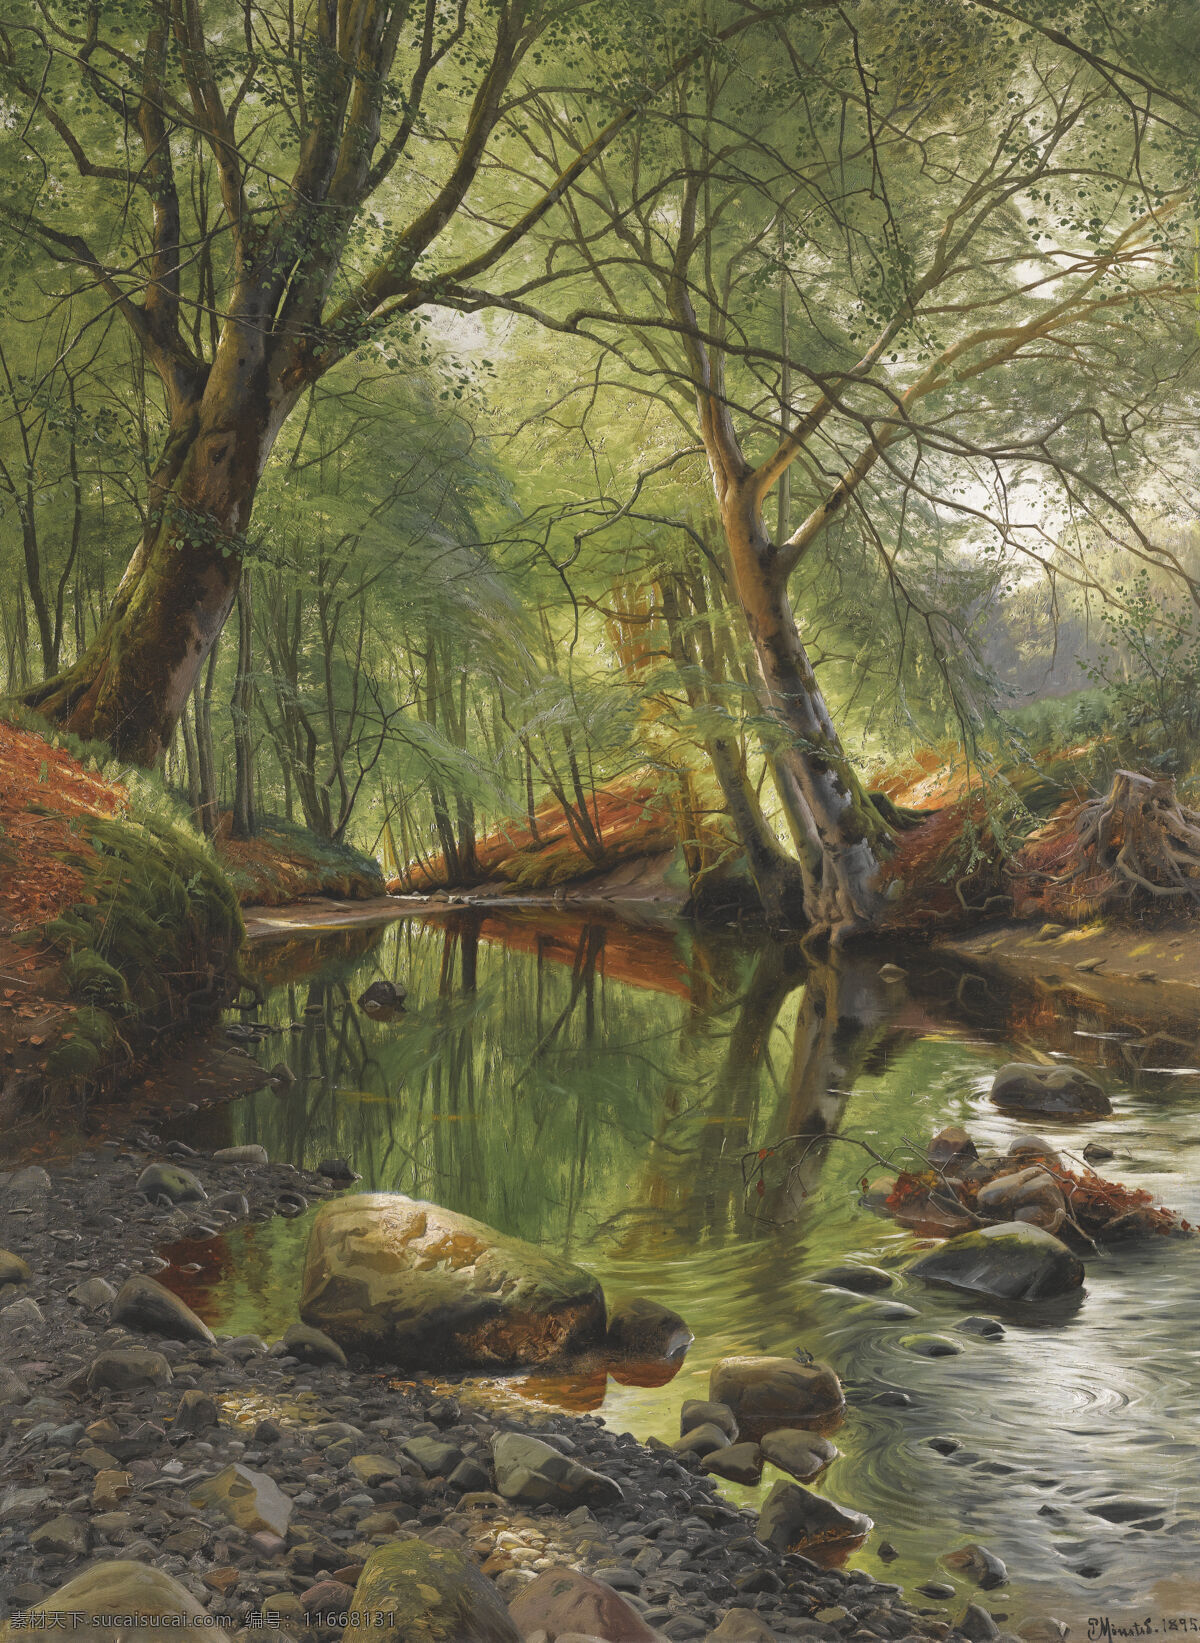 小溪 旁边 树 玄关 油画 风景图片 环保 环境 大自然 自然景观 自然风景 文化艺术 绘画书法